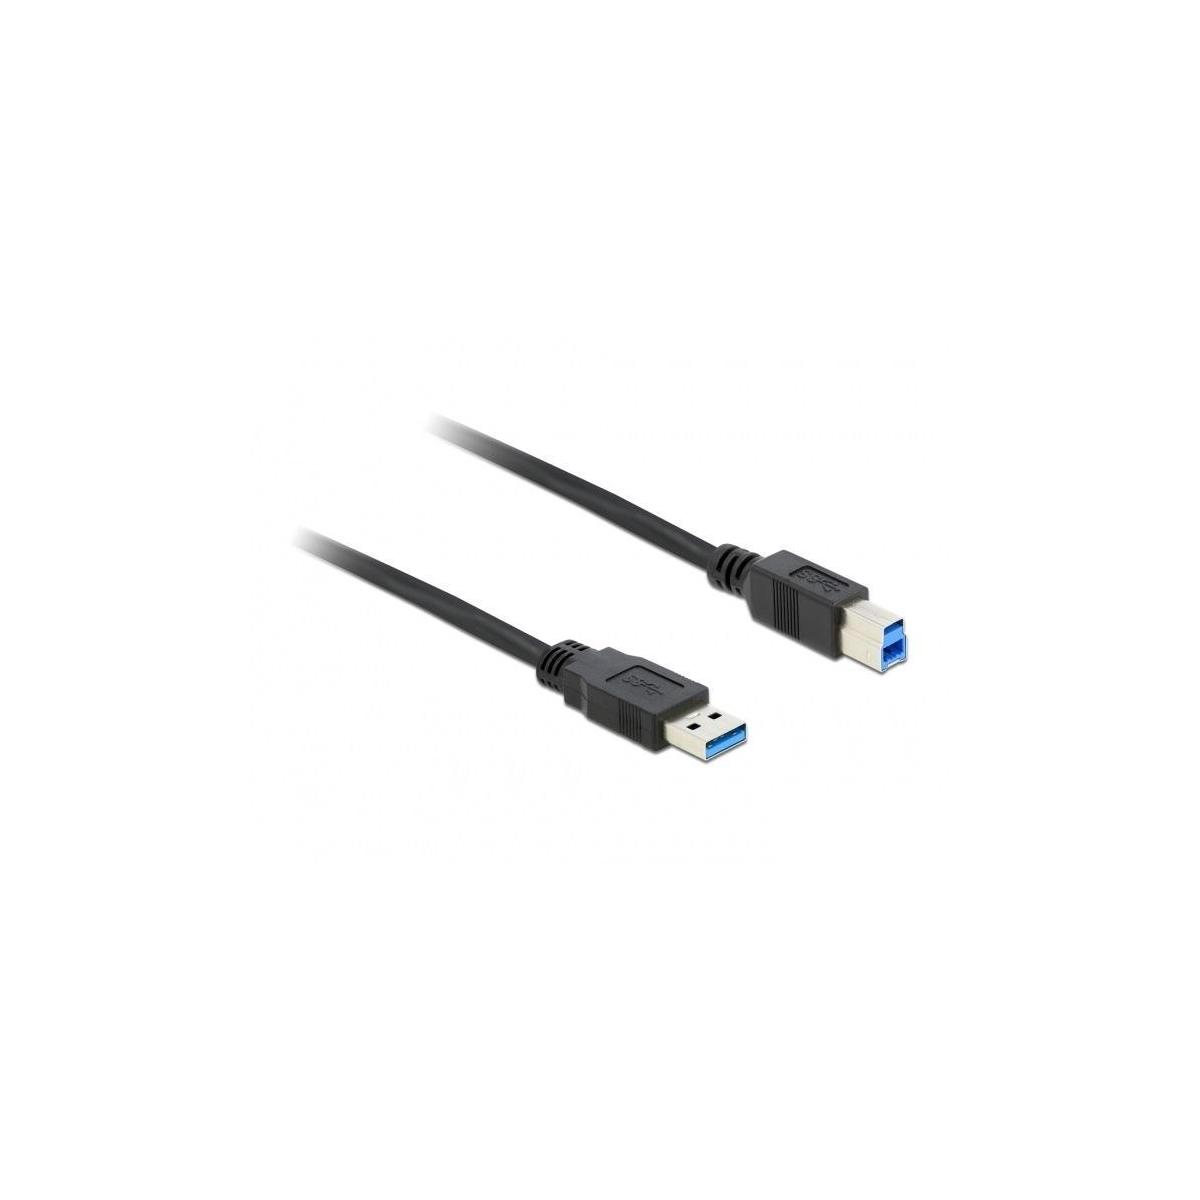 DELOCK DELOCK USB Kabel USB3.0 mehrfarbig -<gt/> USB St/St 1.50m Kabel, schwarz B A Multimedia-Technik